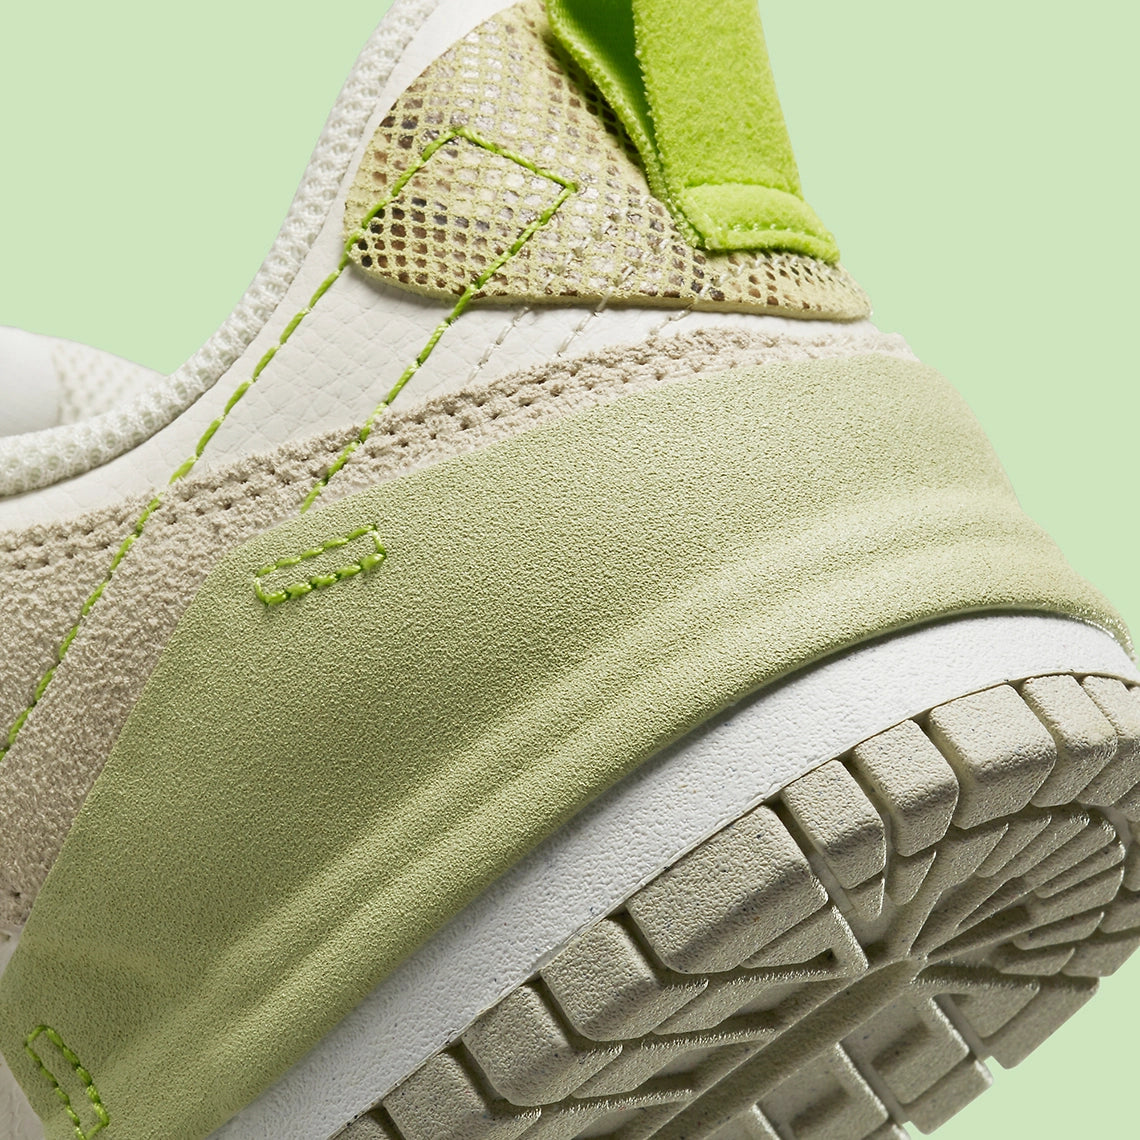 Nike Dunk Low Disrupt 2 Green Snake